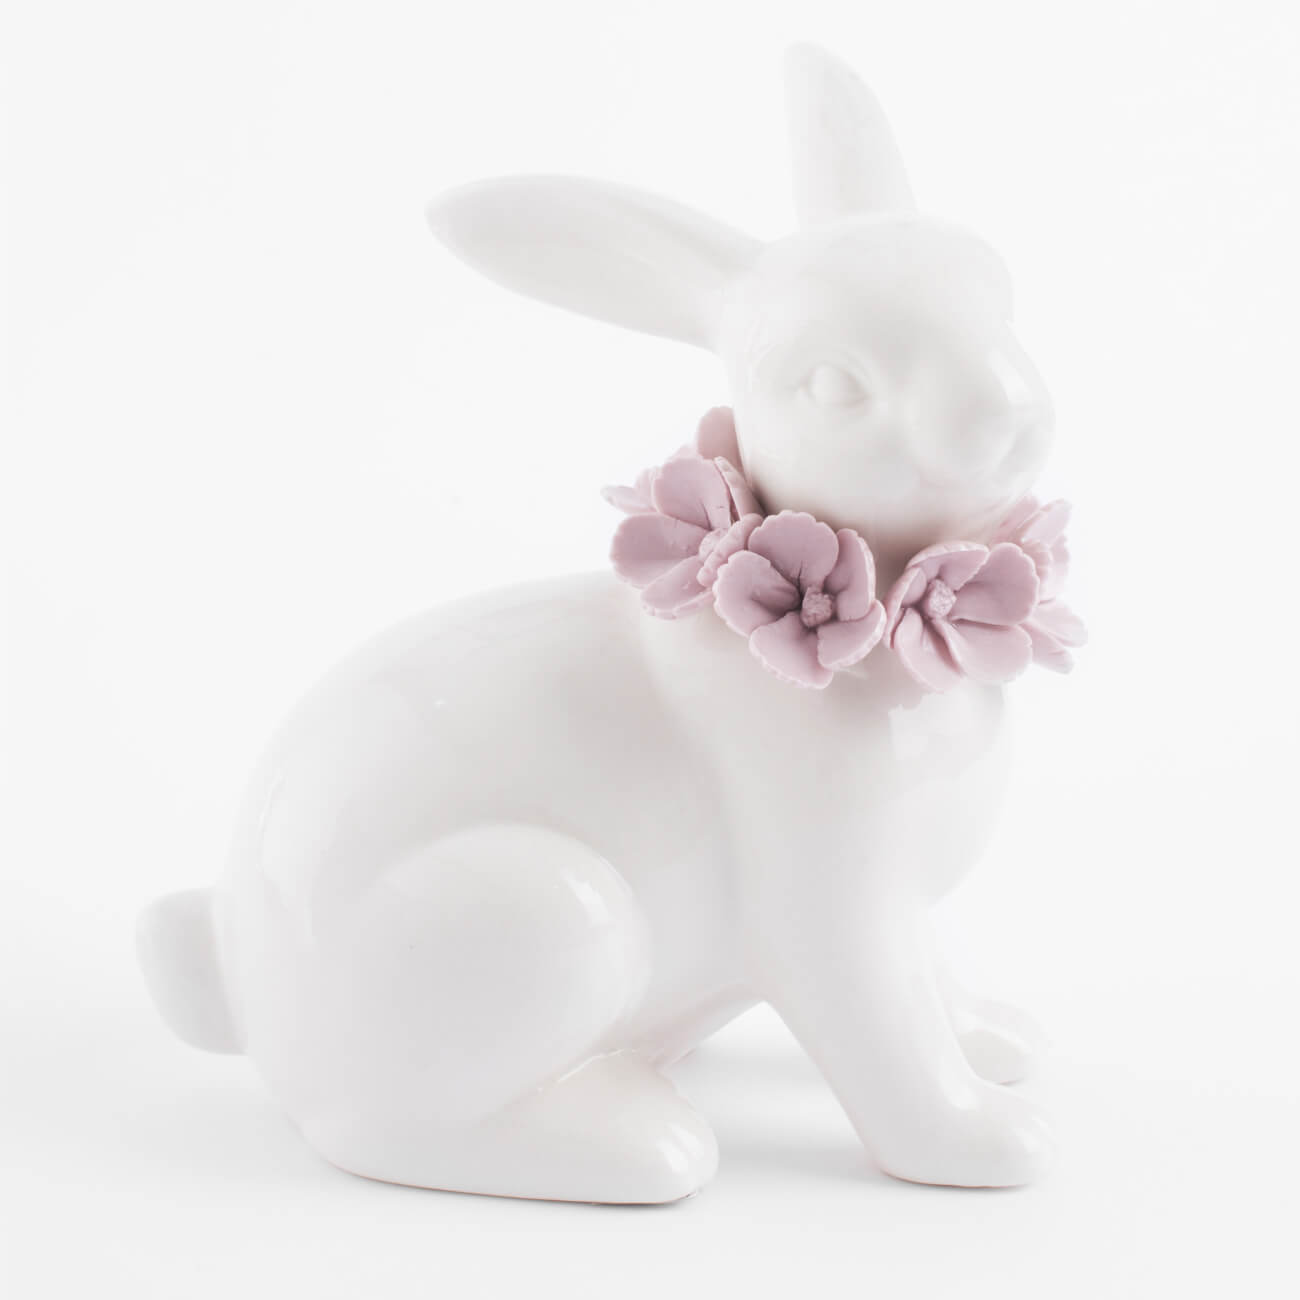 статуэтка 15 см фарфор porcelain белая кролик в ах pure easter Статуэтка, 15 см, фарфор Porcelain, белая, Кролик в цветах, Pure Easter